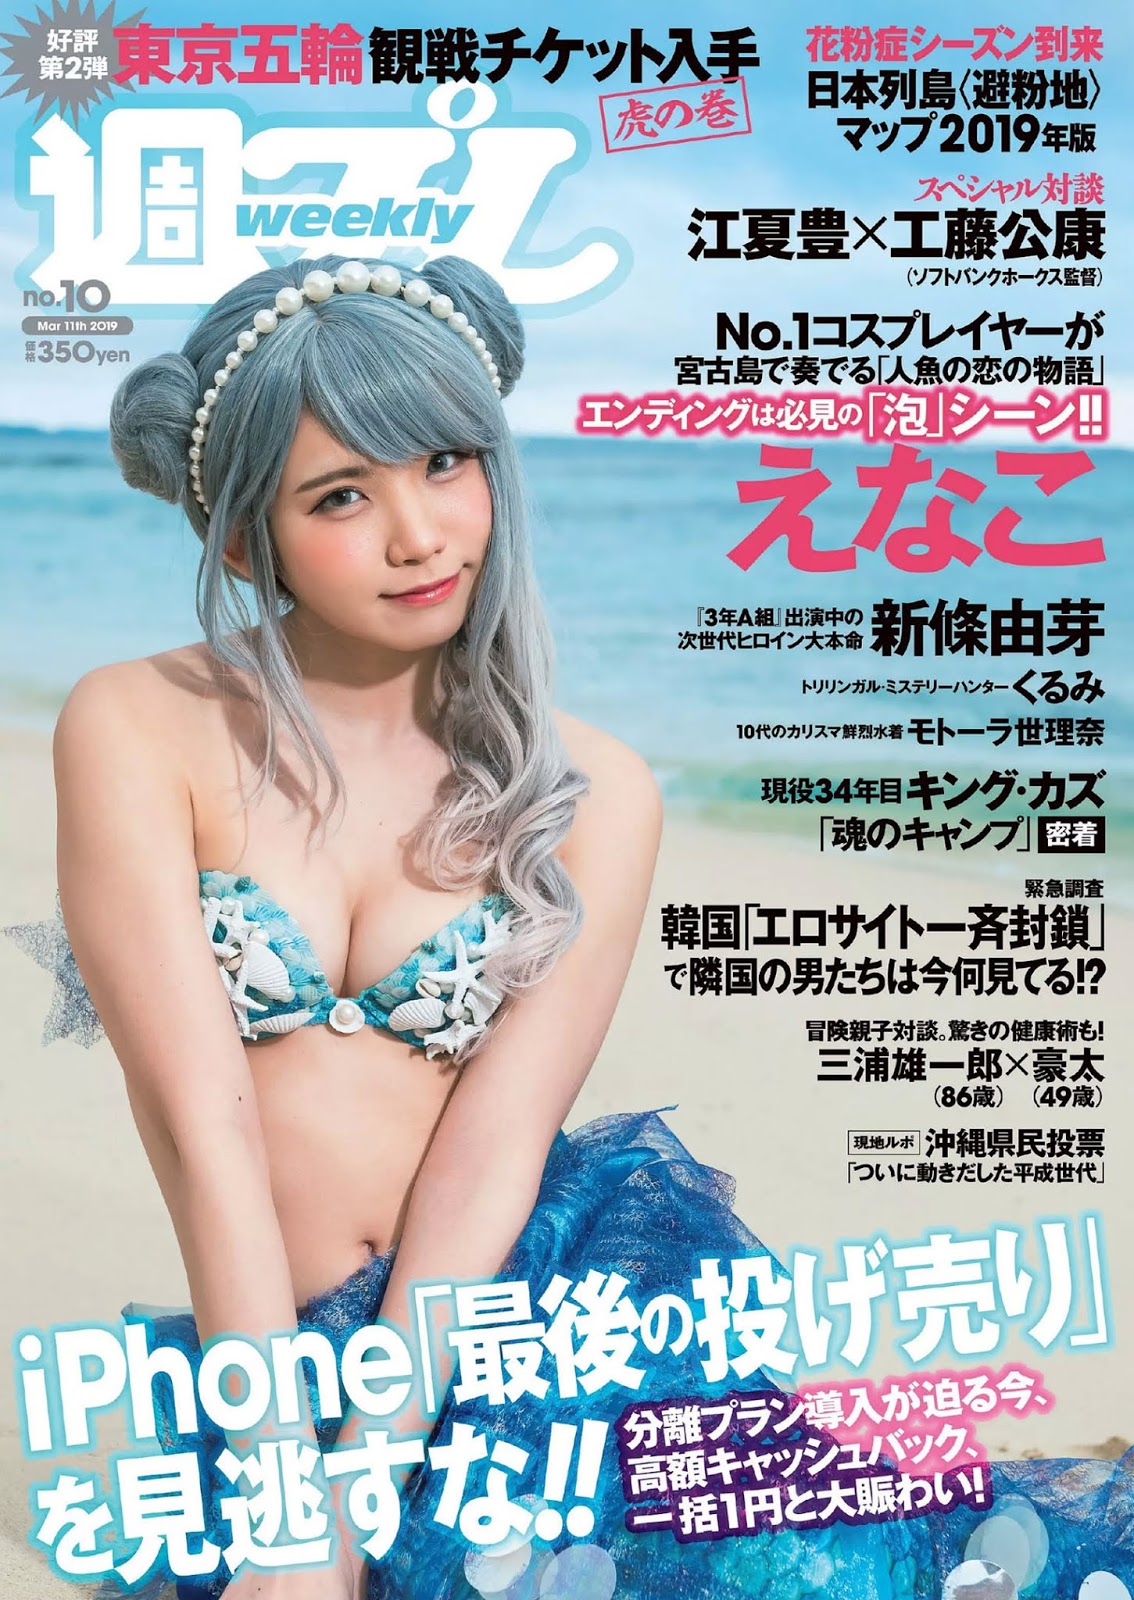 Enako えなこ, Weekly Playboy 2019 No.10 (週刊プレイボーイ 2019年10号)